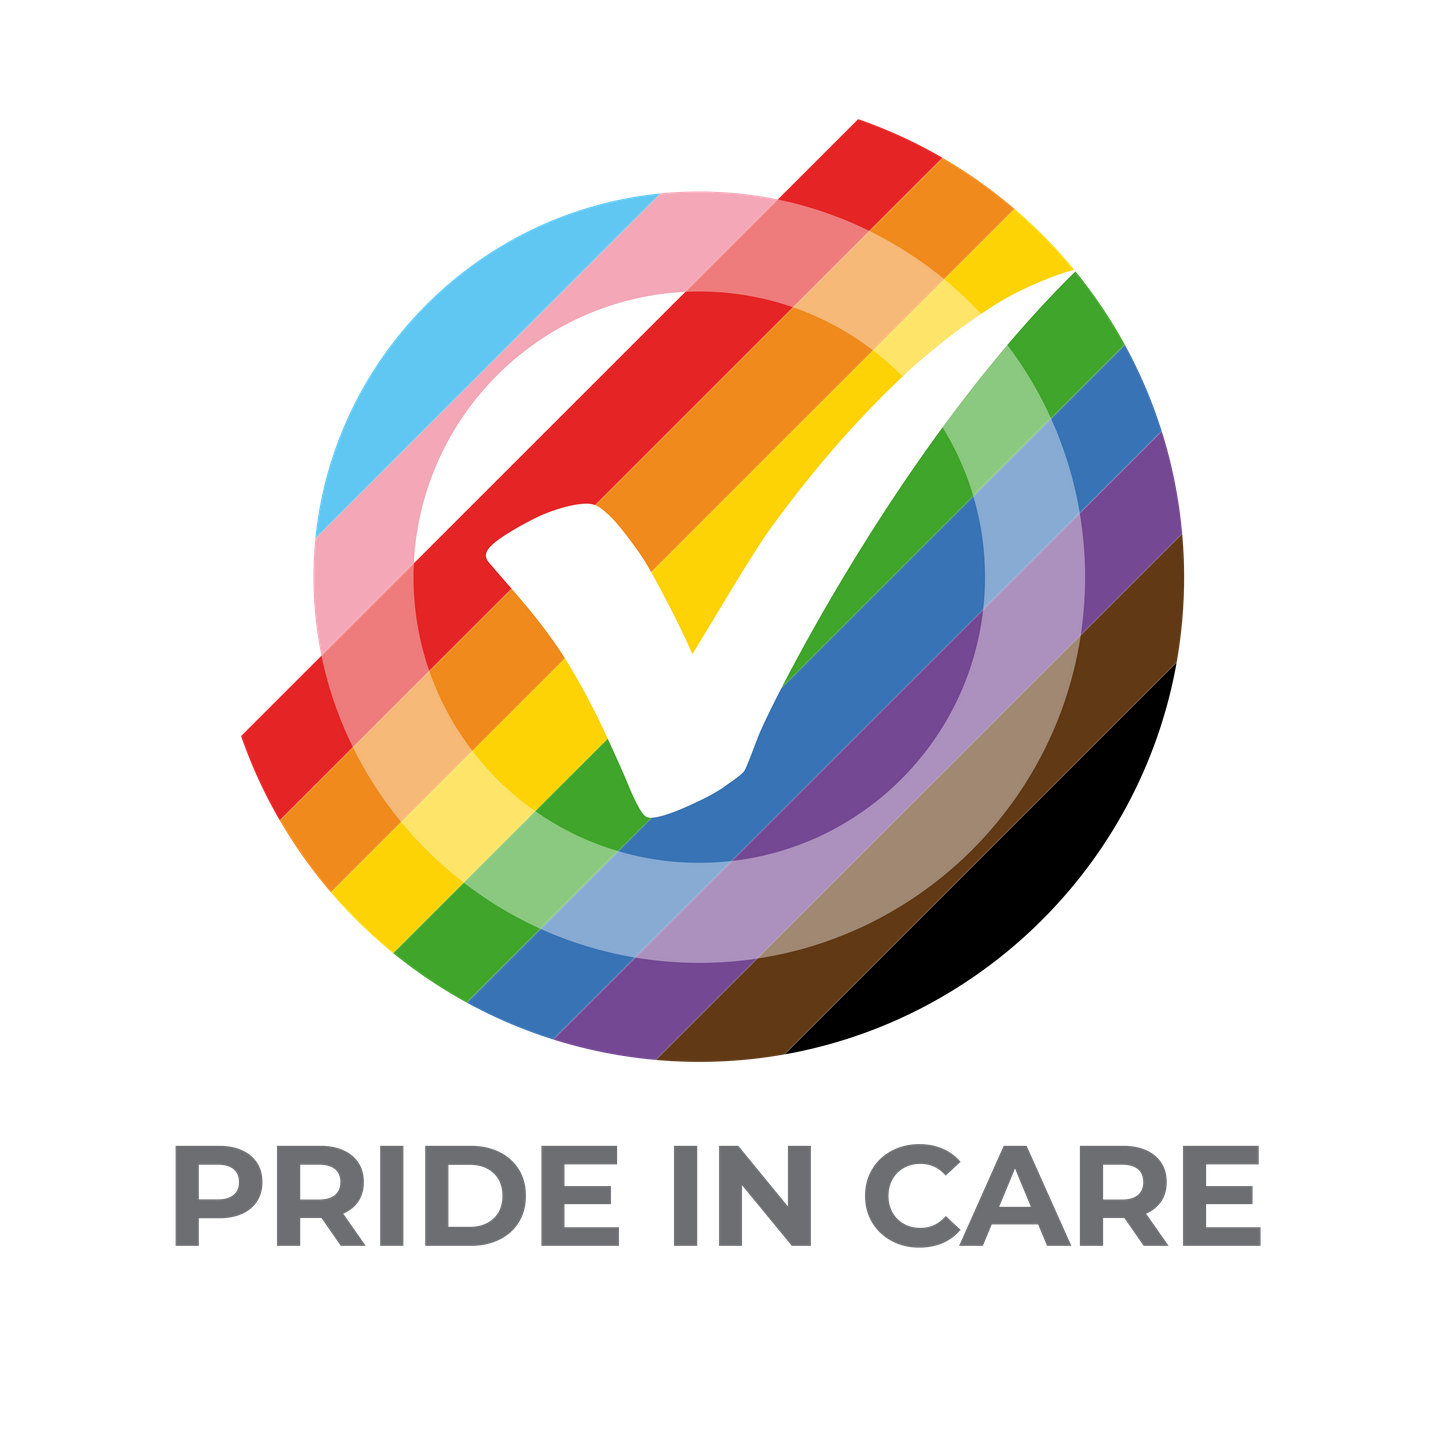 Pride in care logo